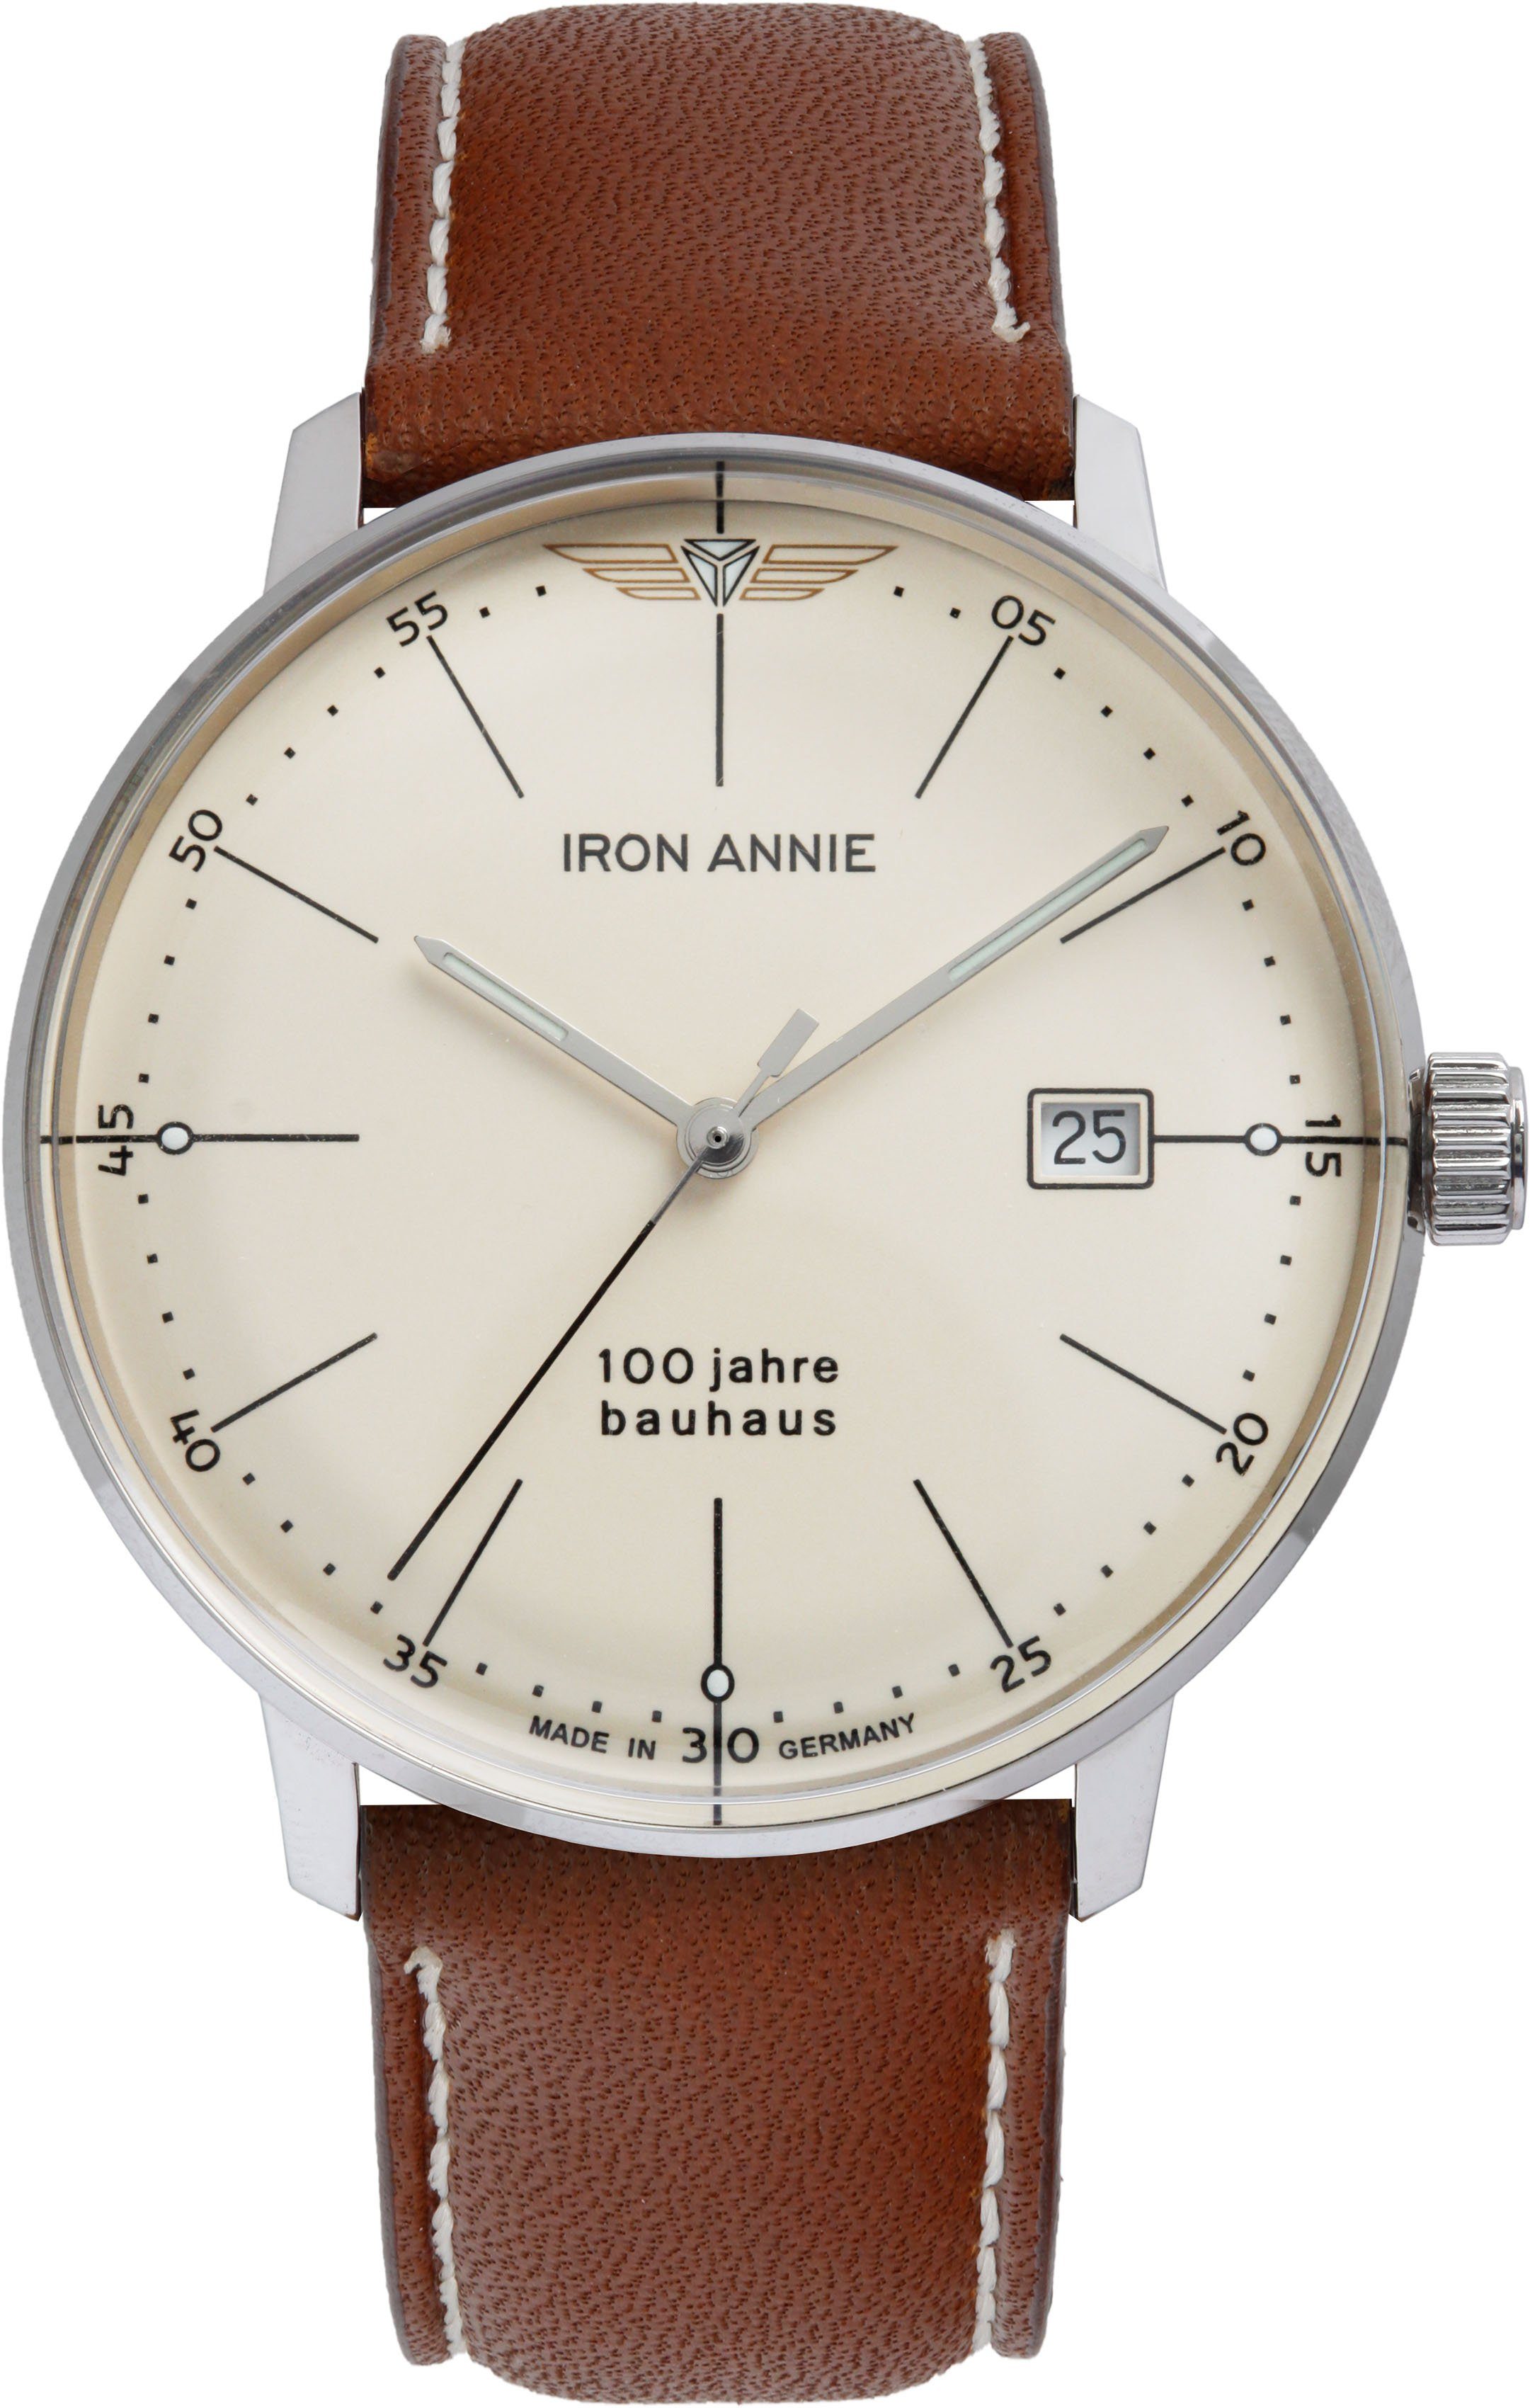 Herren Uhren IRON ANNIE Quarzuhr Bauhaus 100 Jahre, 5070-5_Air